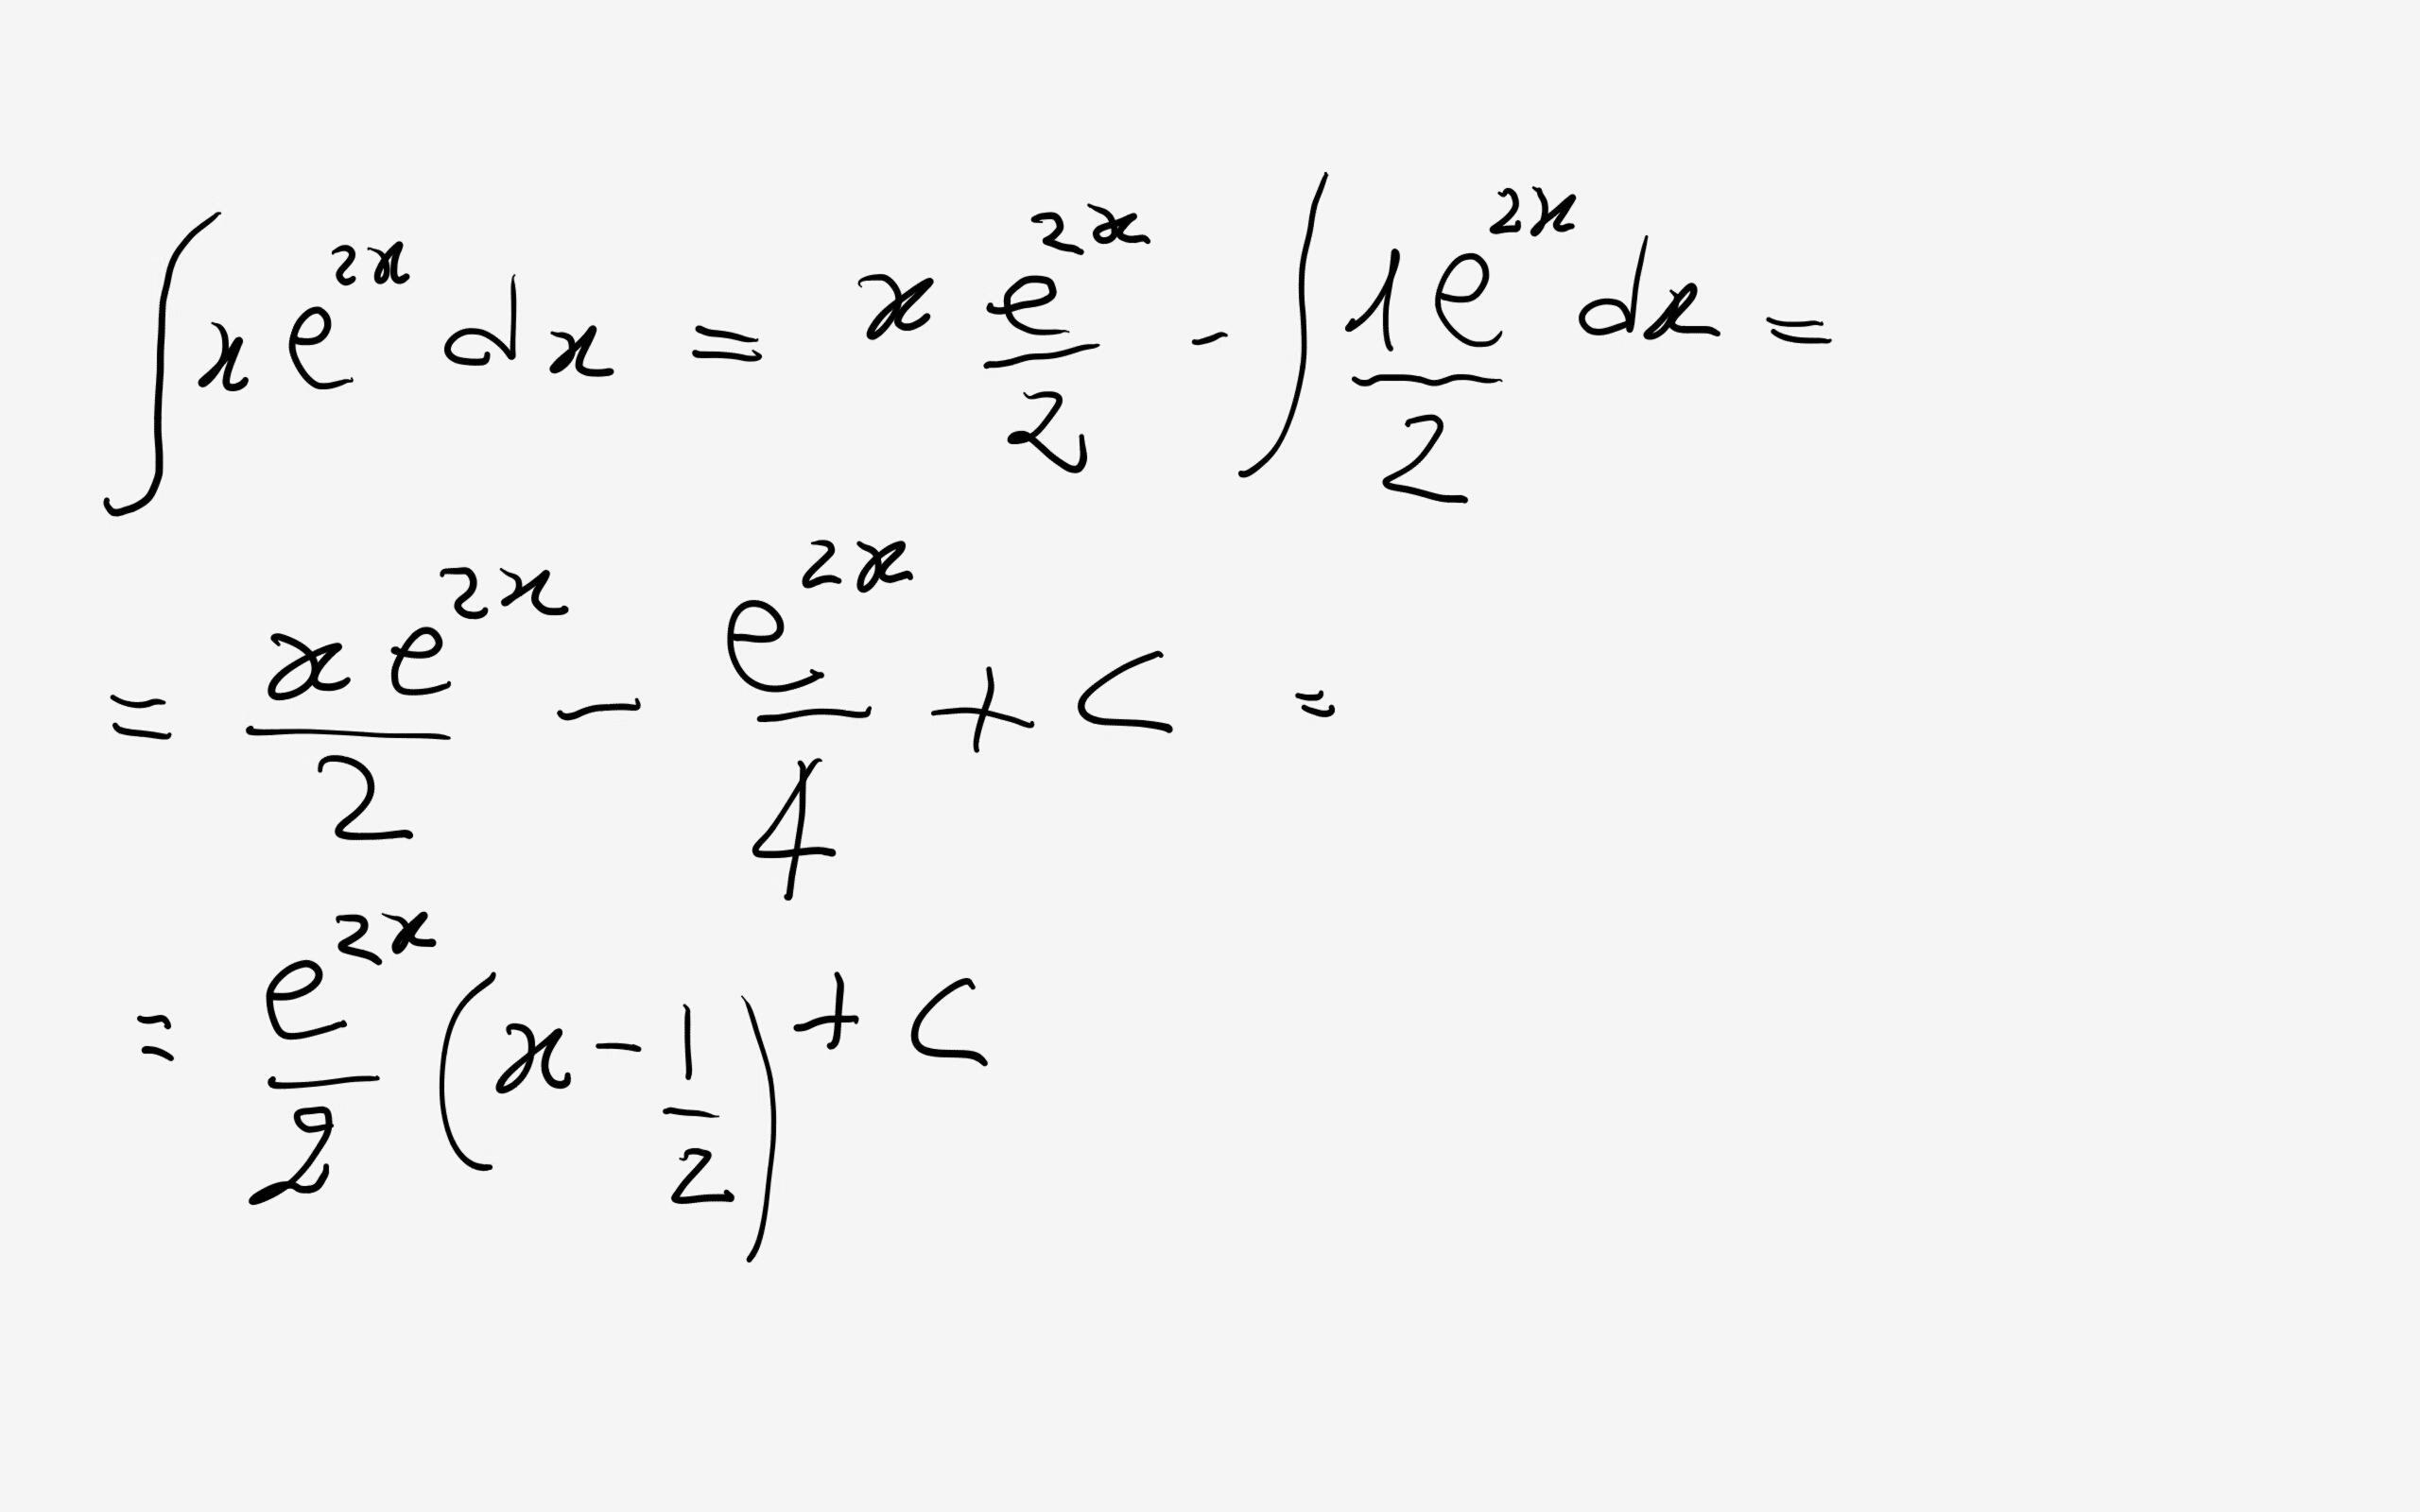 Бутан x1 x2. Интеграл xe 2x DX. Интеграл xe^x^2. Интеграл x 2 e -x 2. Интеграл DX/E^ E 2x.